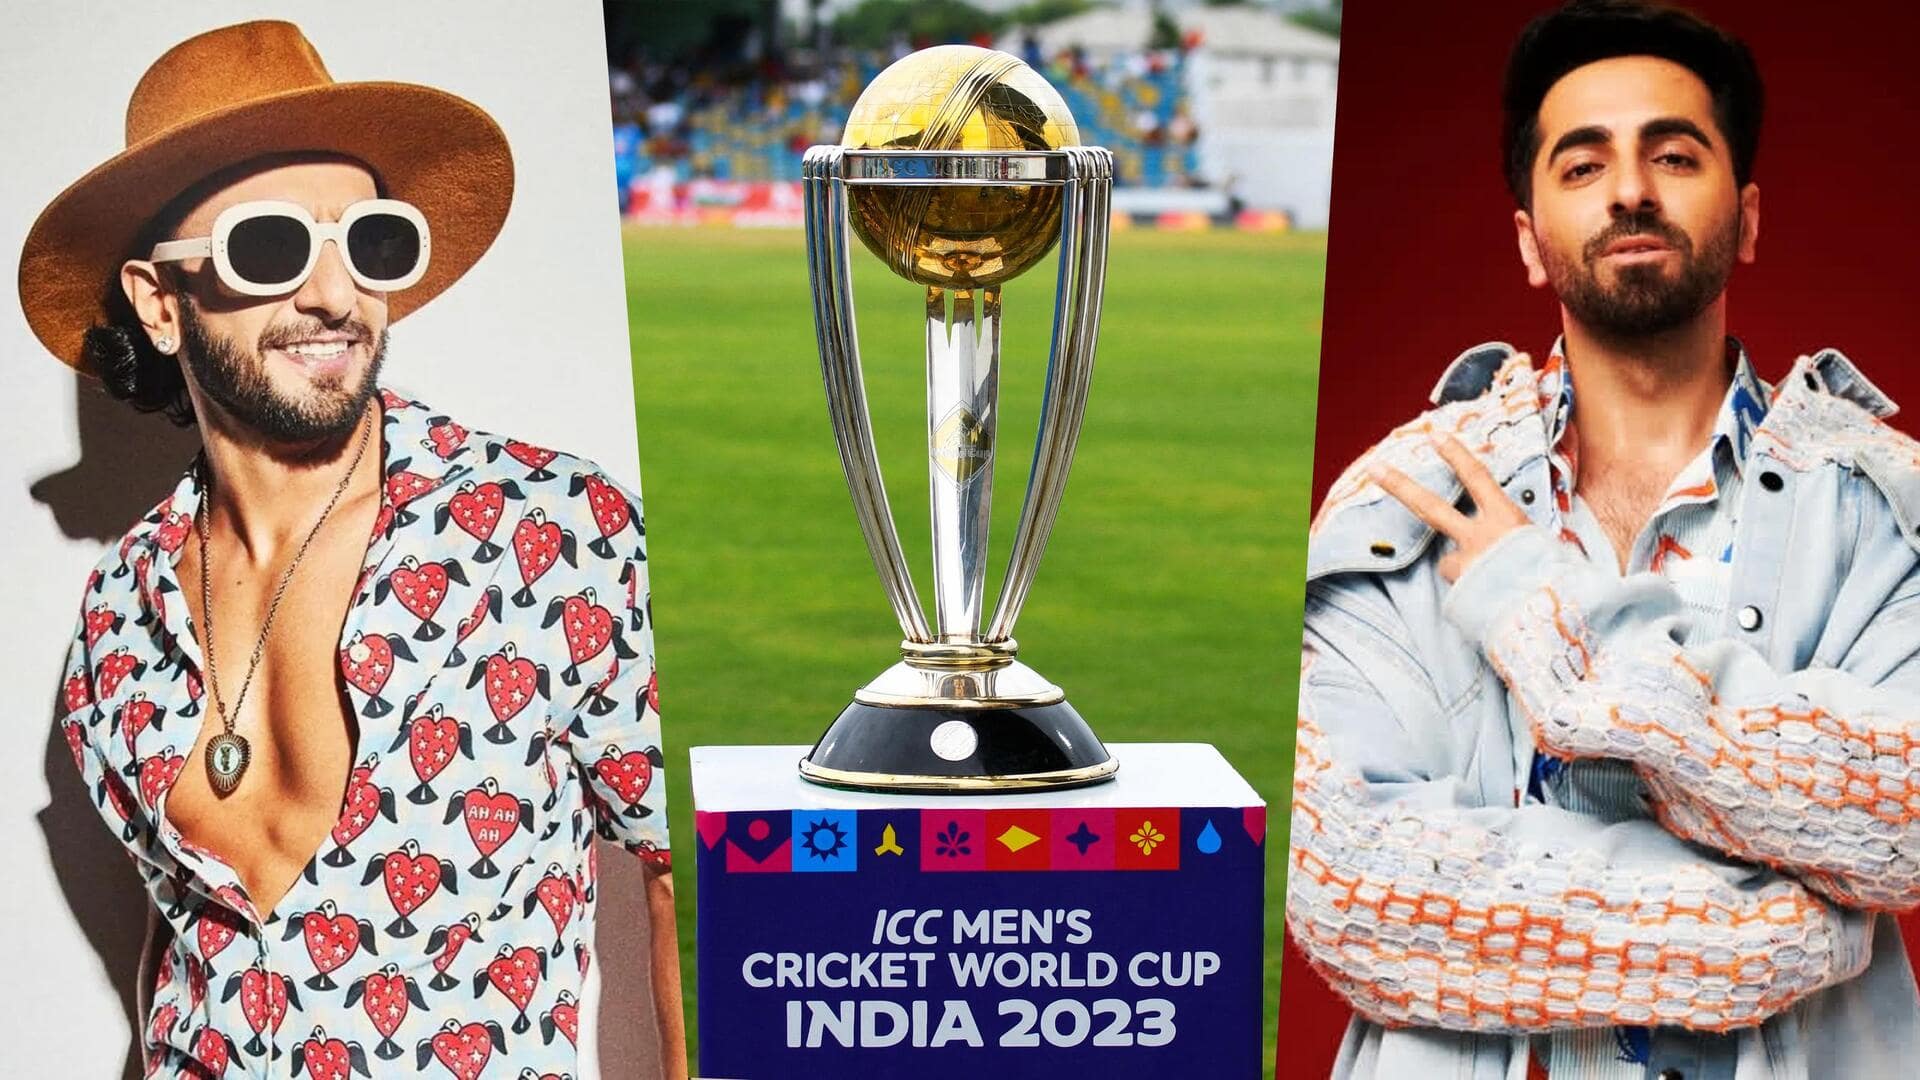 विश्व कप: भारत बनाम ऑस्ट्रेलिया मुकाबले के लिए उत्साहित फिल्मी सितारे, भारतीय टीम को दीं शुभकामनाएं